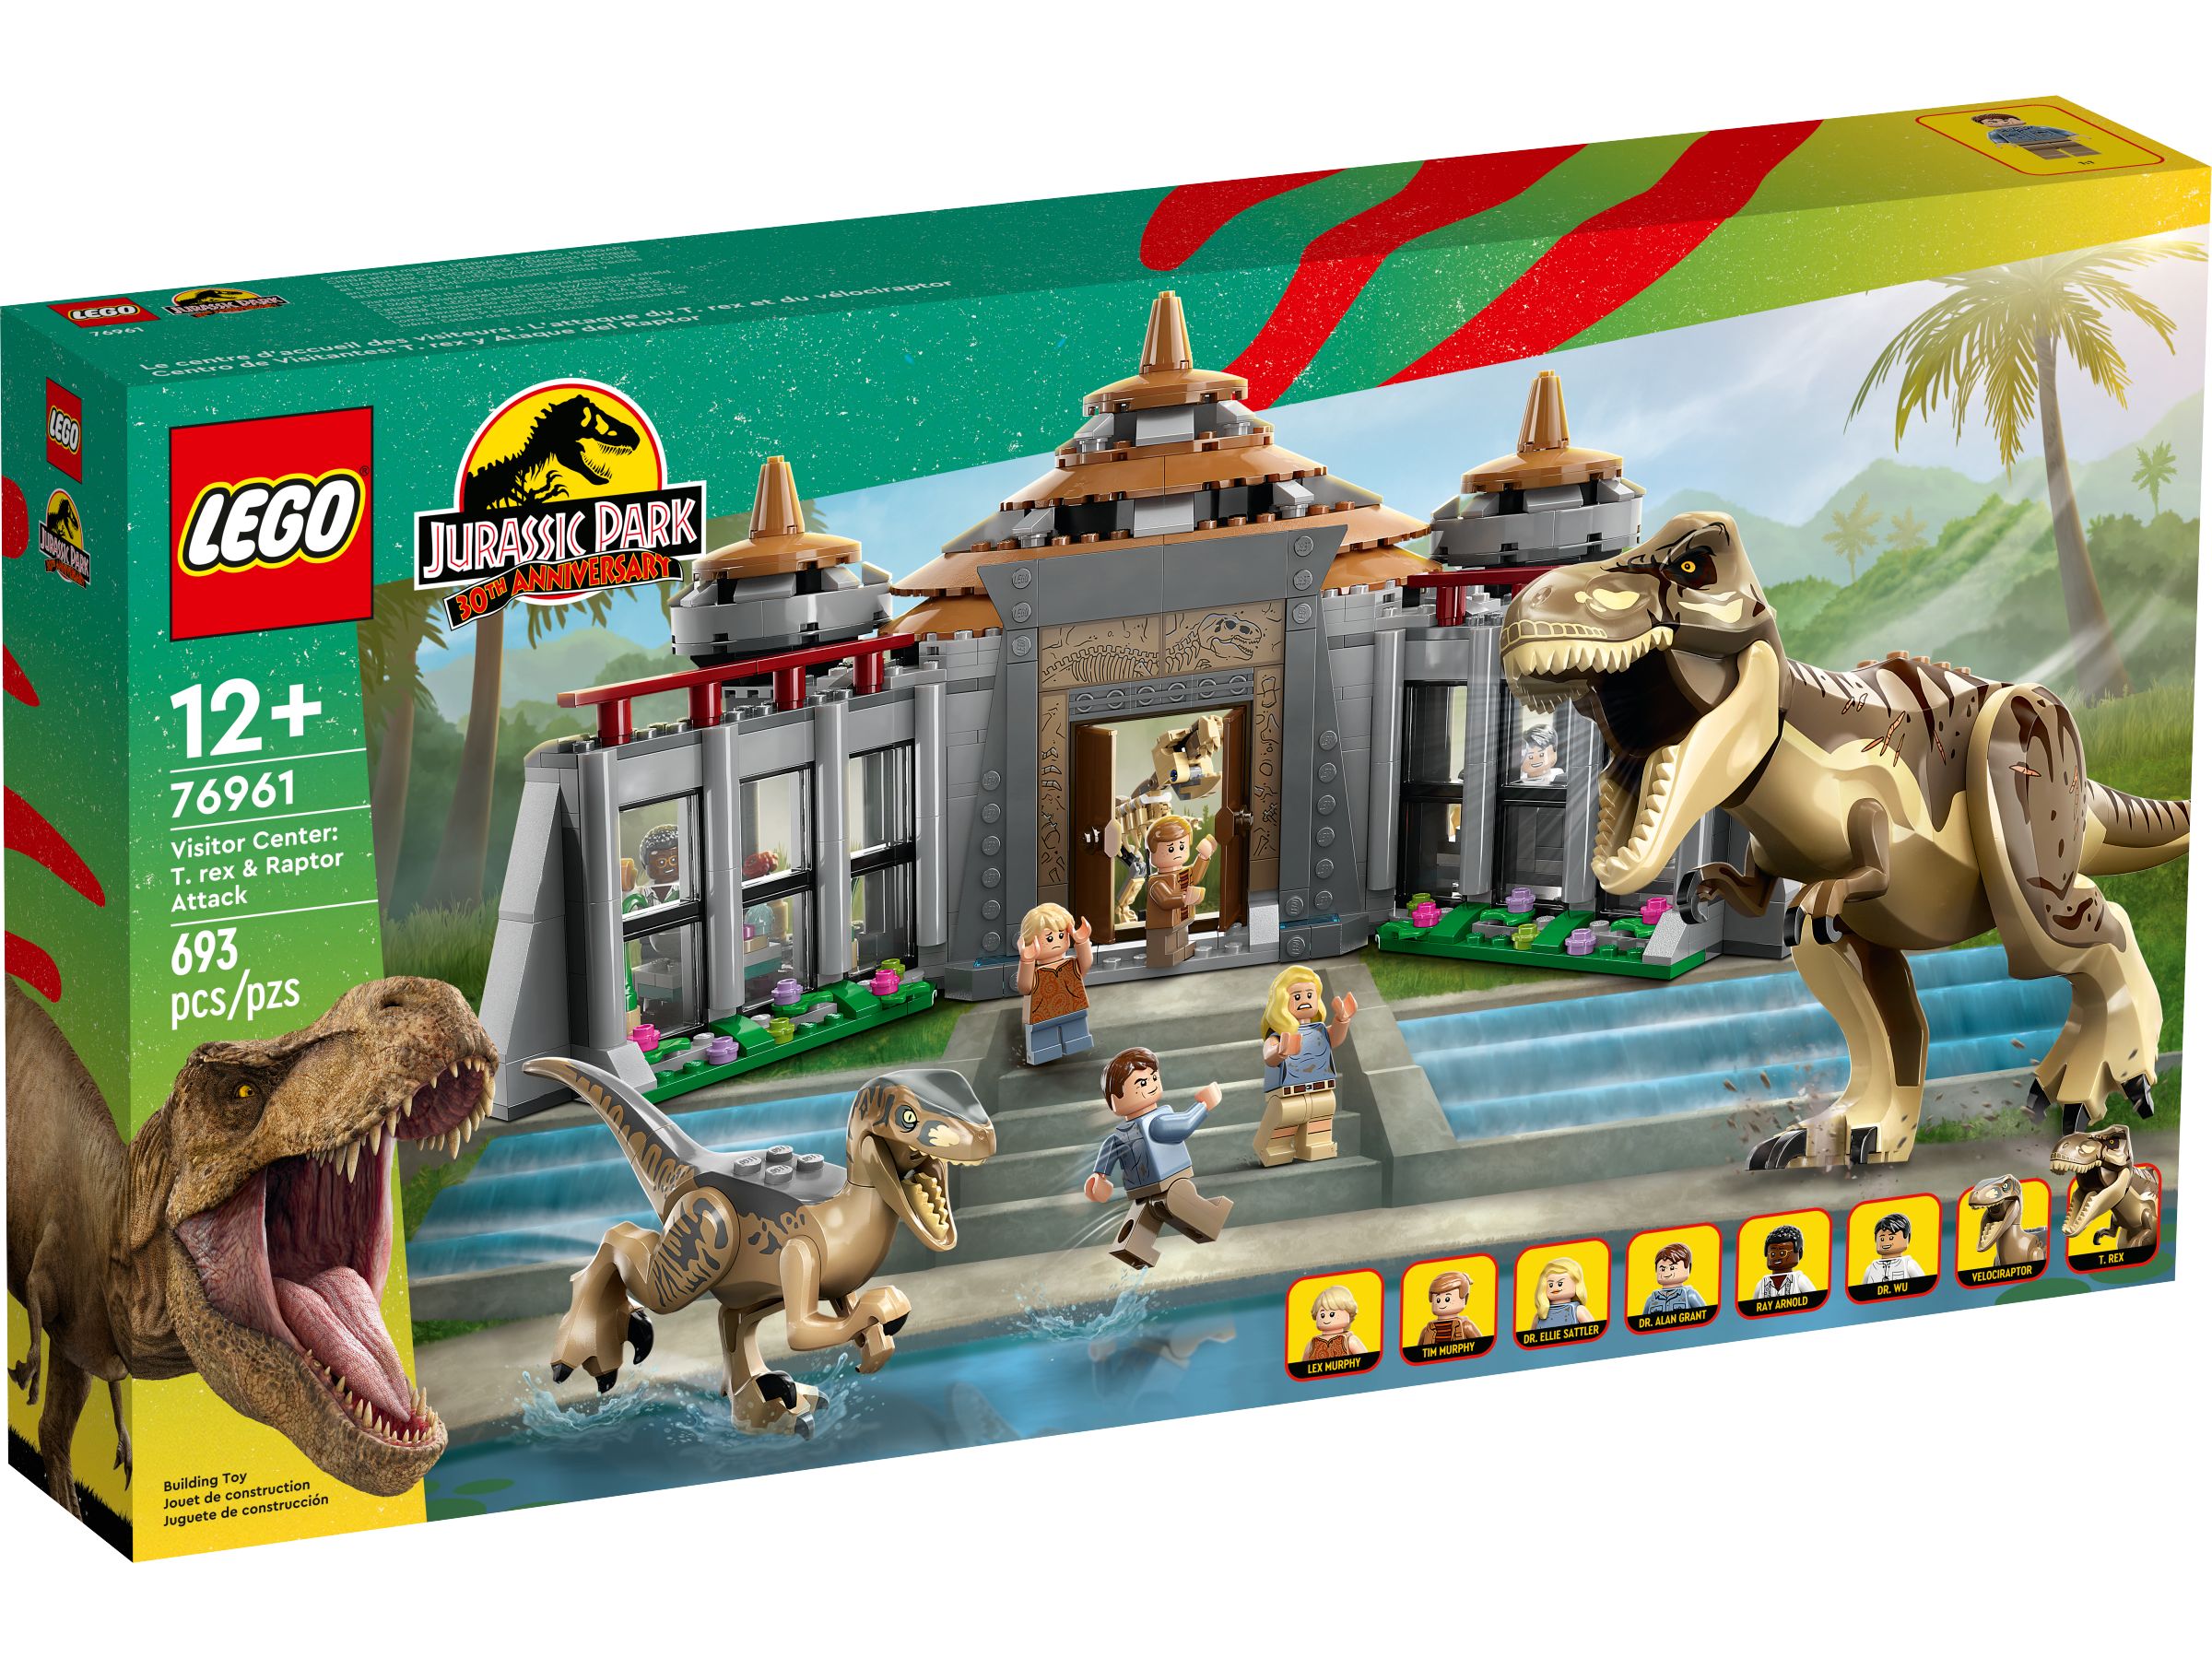 LEGO Jurassic World 76961 Angriff des T. rex und des Raptors aufs Besucherzentrum LEGO_76961_Box1_v39.jpg